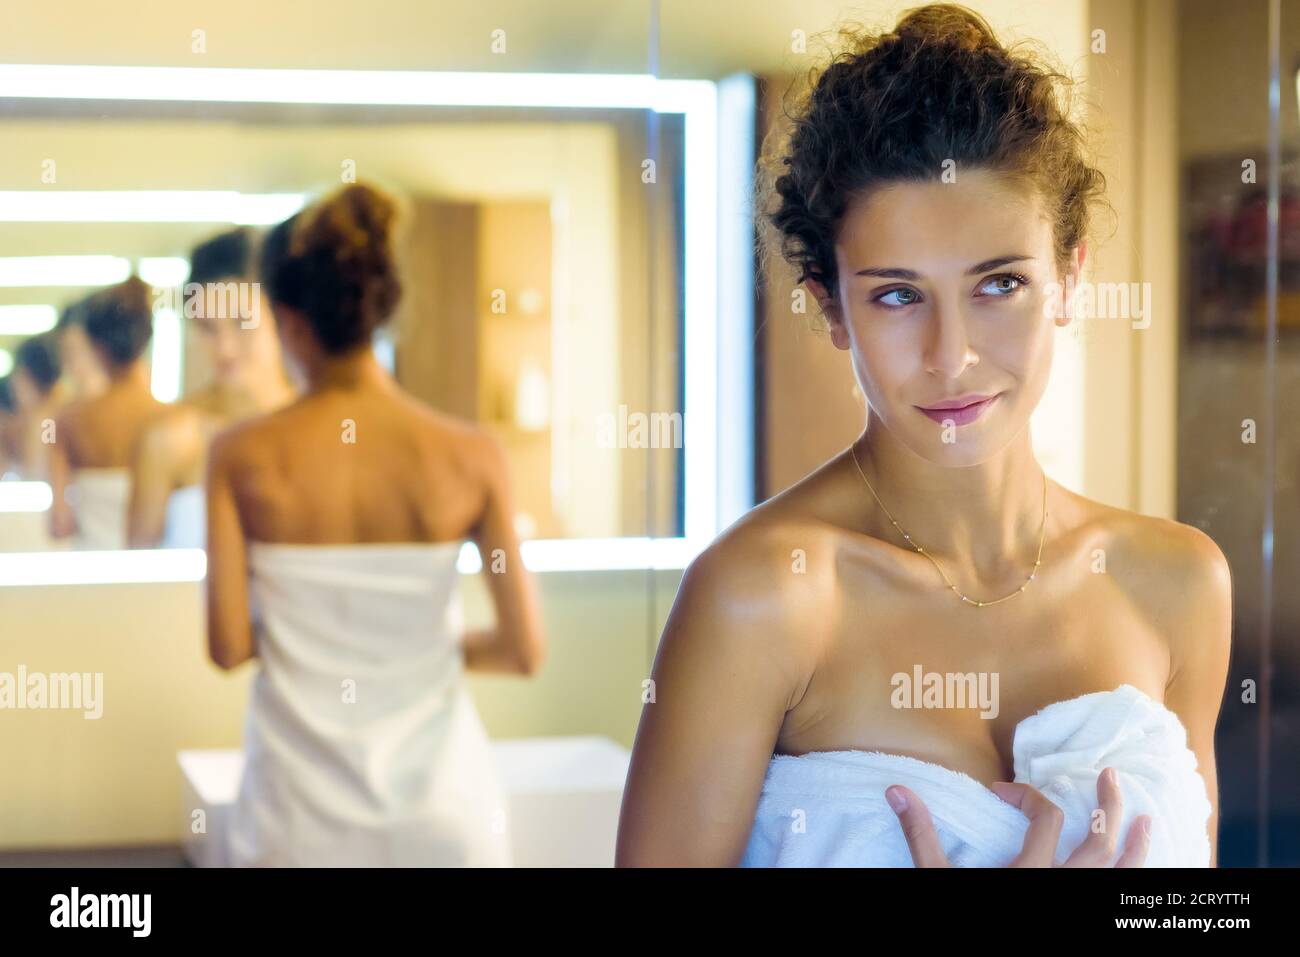 Hübsches Mädchen in einem weißen Handtuch gewickelt bewundern sich in Ein Badezimmerspiegel mit der Reflexion wiederholt mehrmals in Eine Änderung der zurückgehenden Perspektive Stockfoto